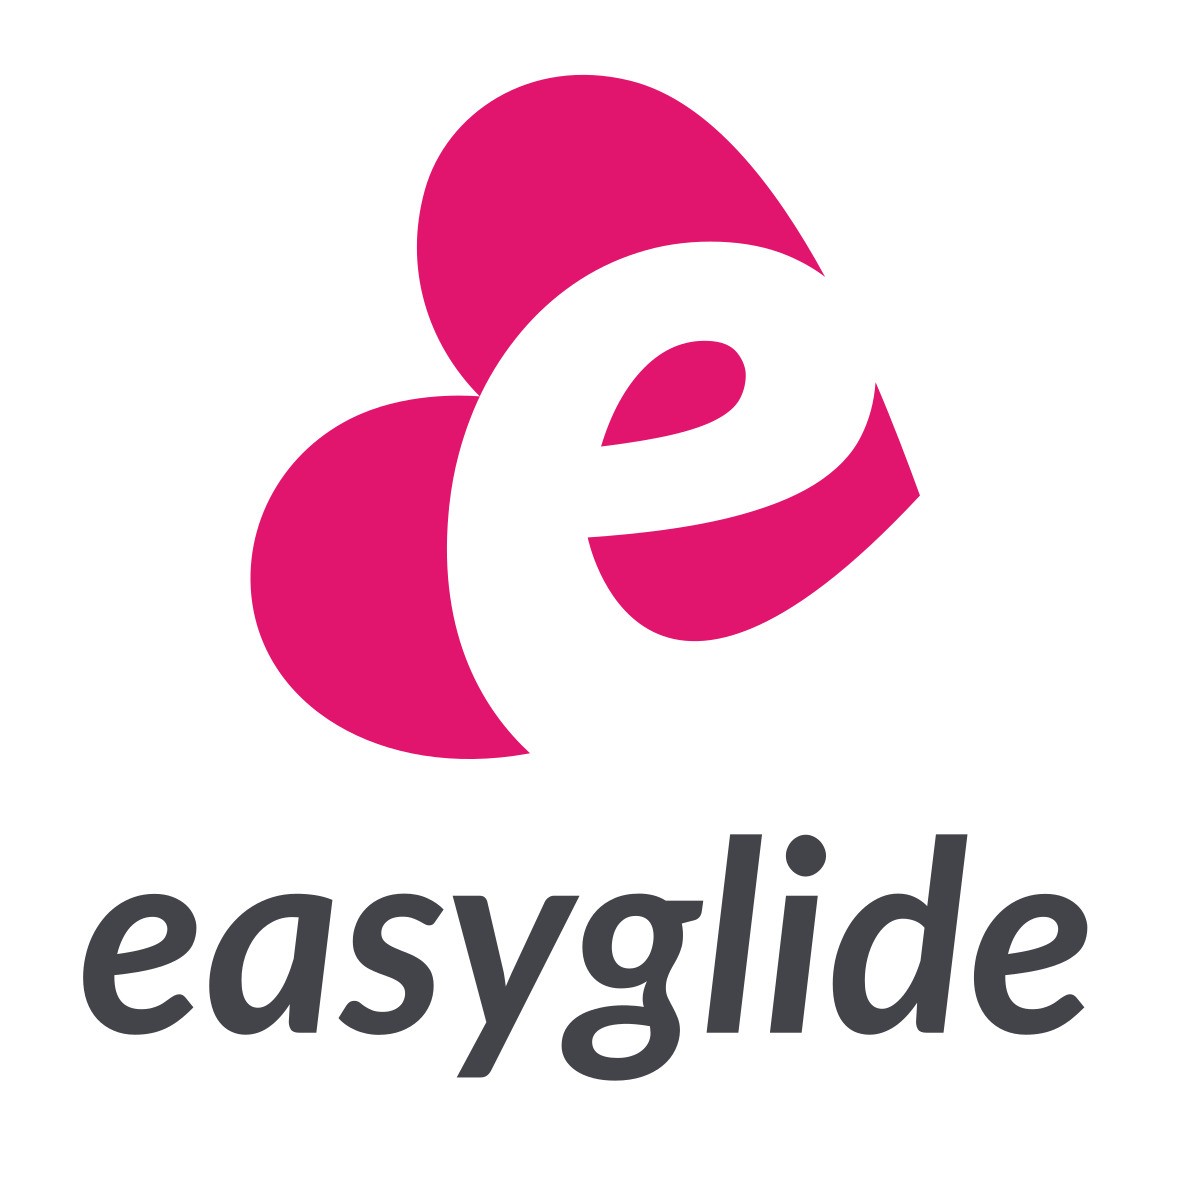 Easyglide